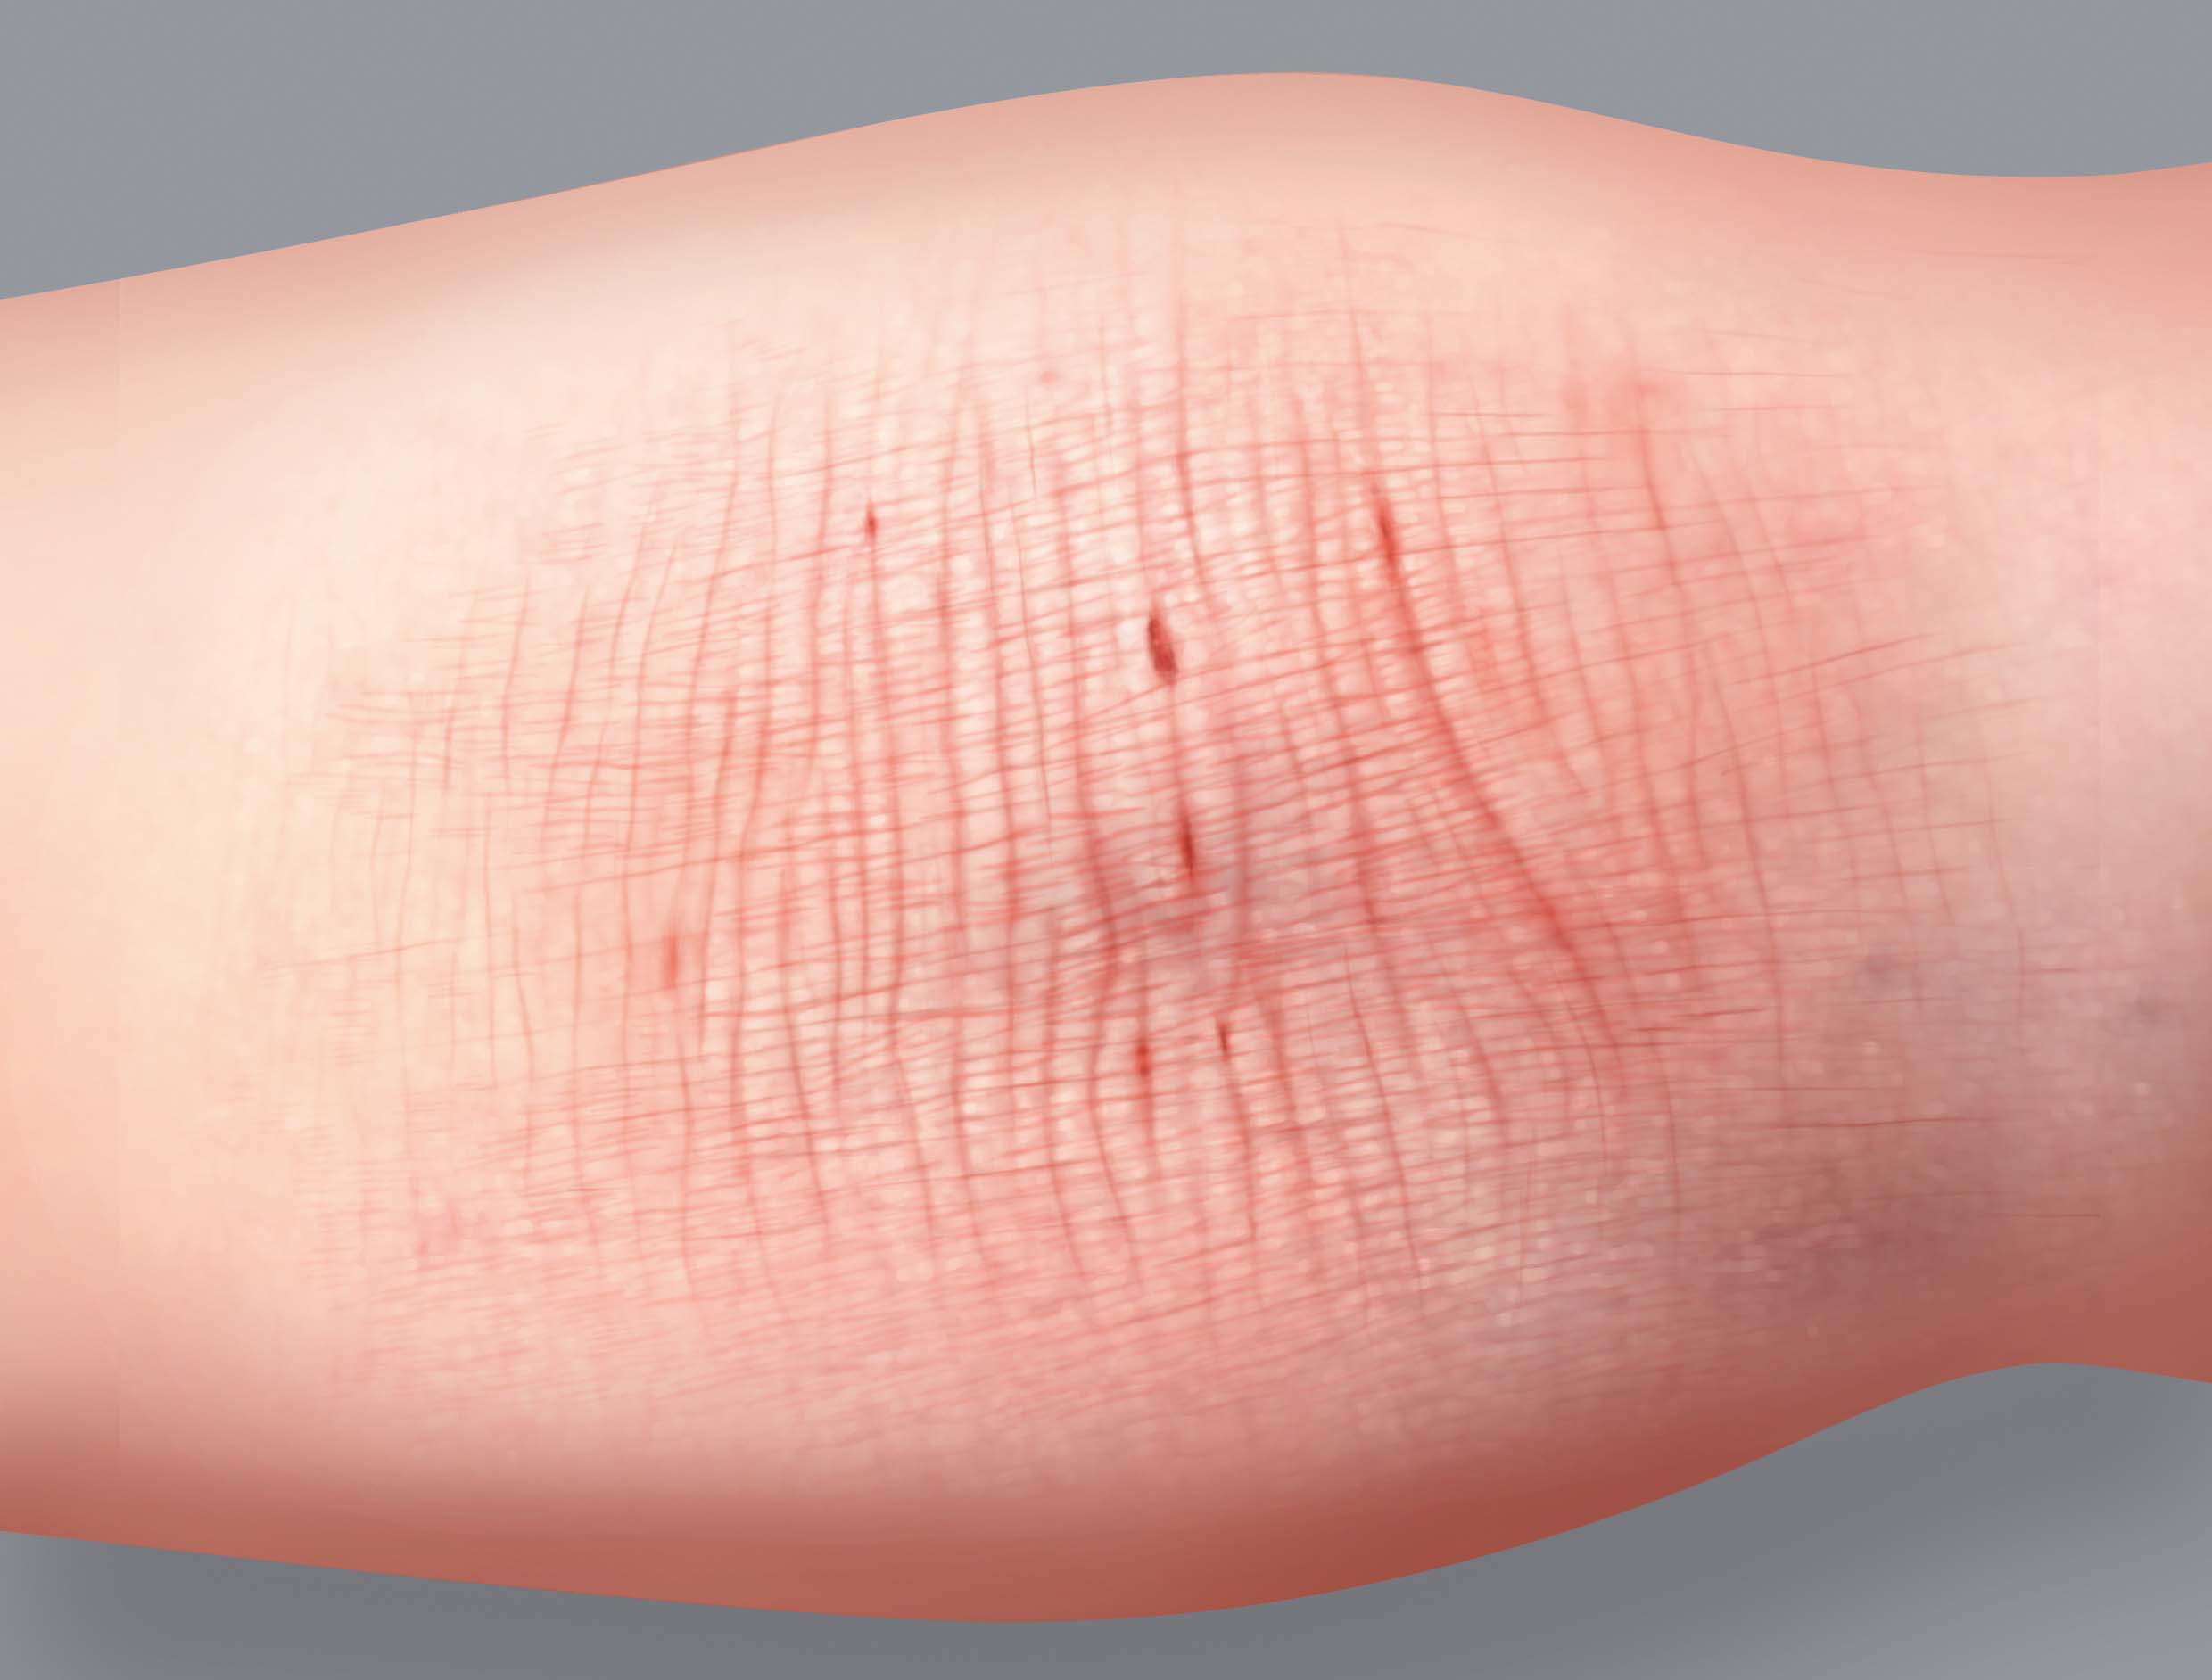 Síntomas del eczema atópico: engrosamiento de la piel o liquenificación